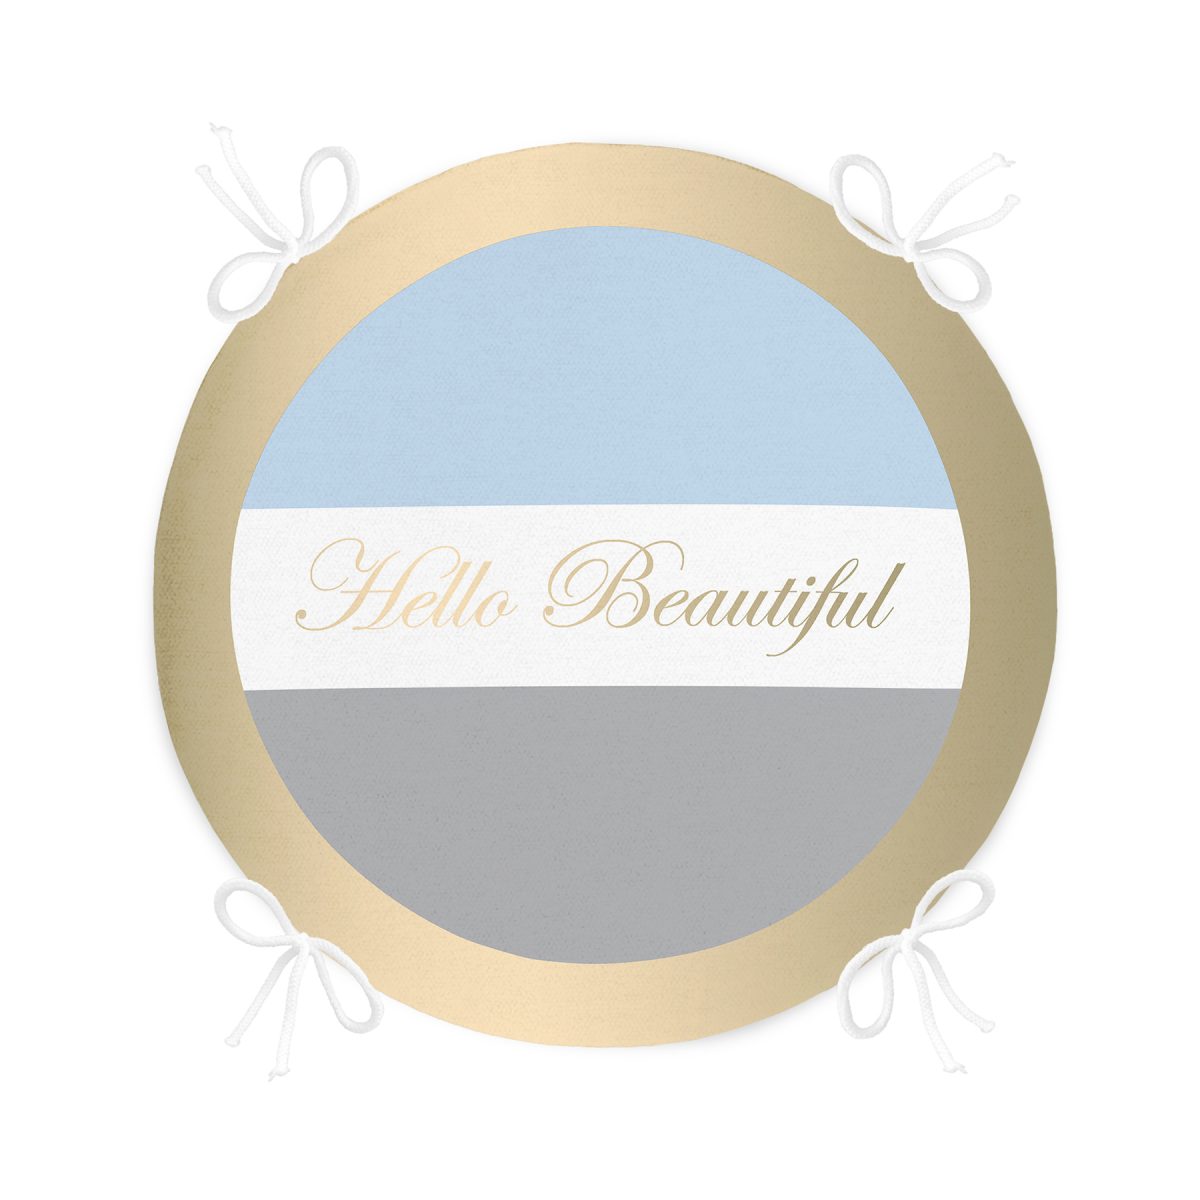 Hello Beautiful Mavi & Gri Dijital Baskılı Yuvarlak Fermuarlı Sandalye Minderi Realhomes